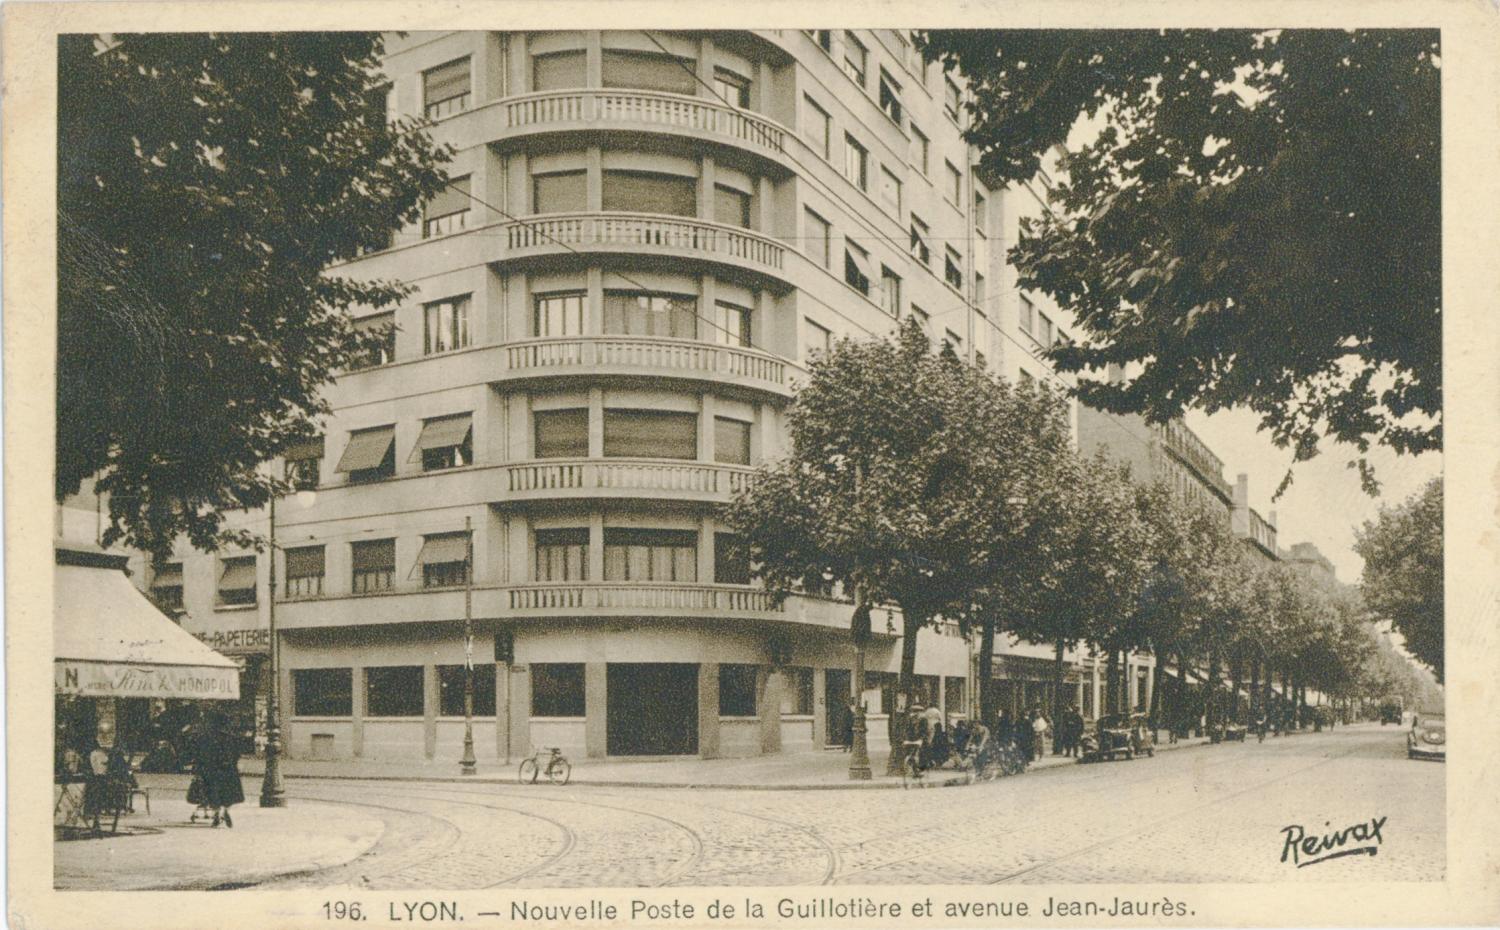 Lyon. - Nouvelle Poste de la Guillotière et avenue Jean-Jaurès